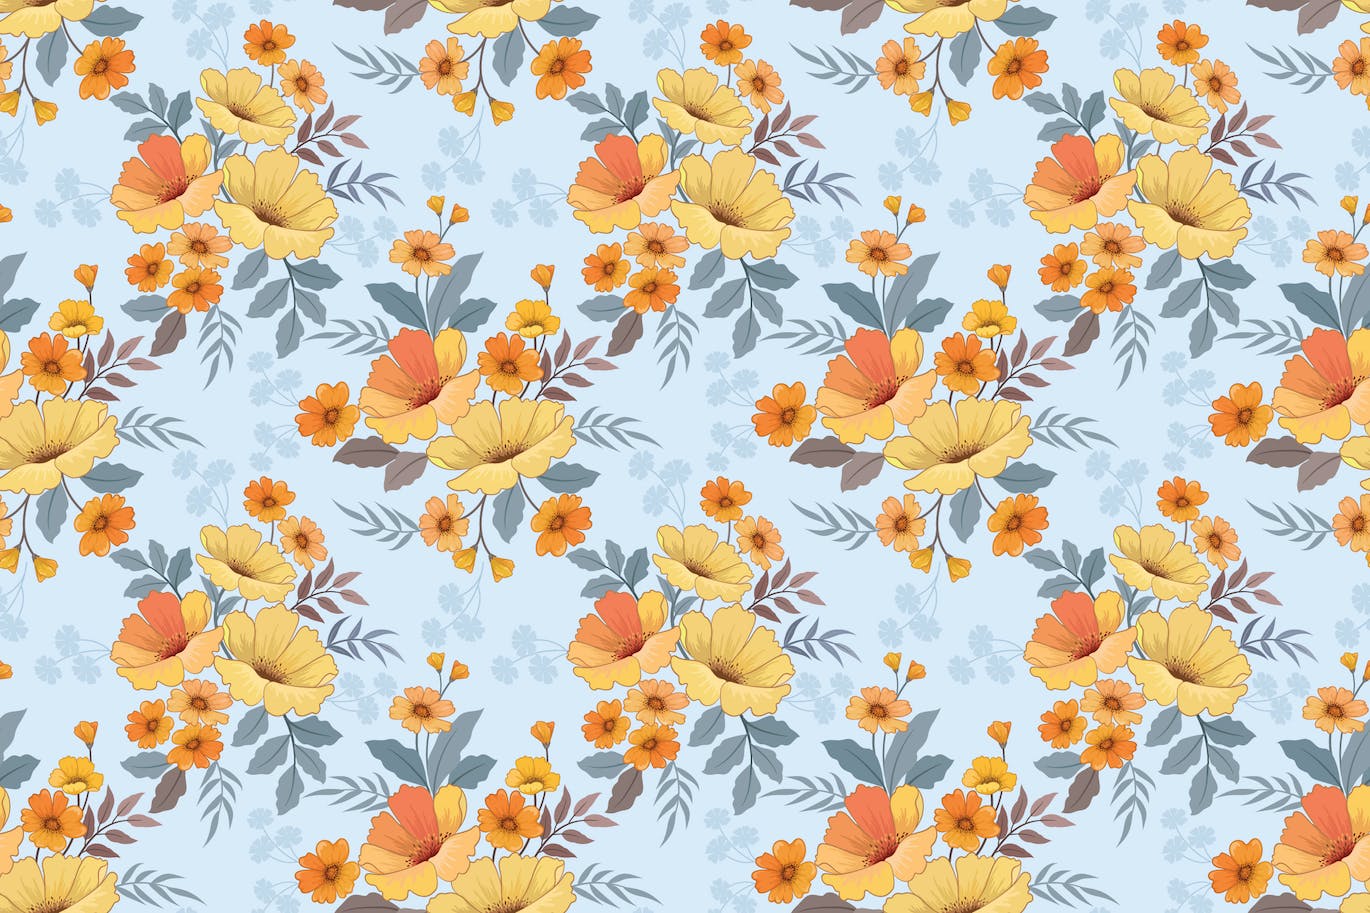 黄色和橙色花朵无缝图案素材 Yellow and orange flowers seamless pattern. 图片素材 第1张